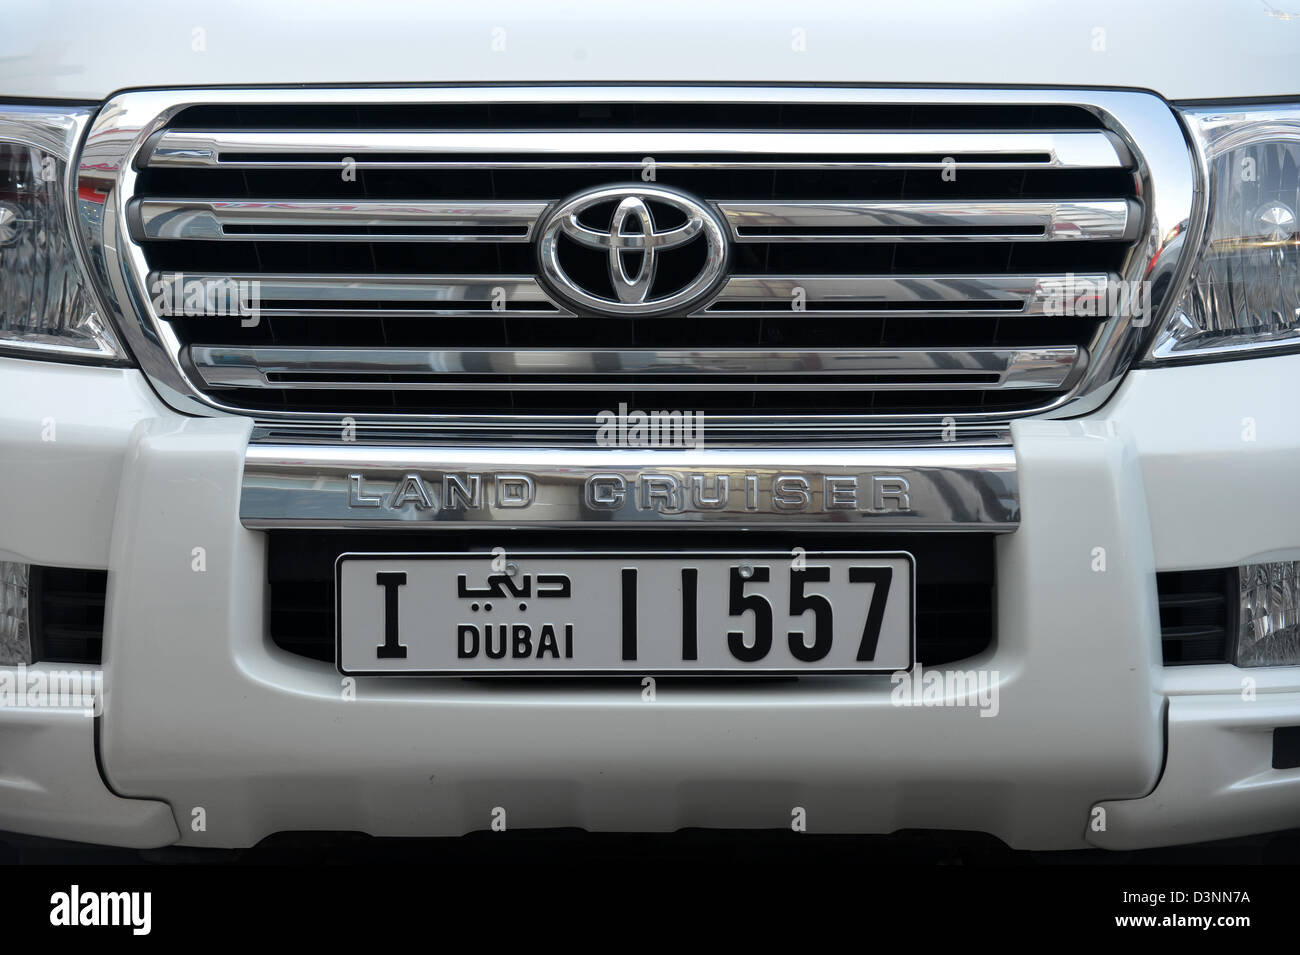 Ein Toyota Land Cruiser mit einem Kennzeichen der Vereinigten Arabischen Emirate. Stockfoto